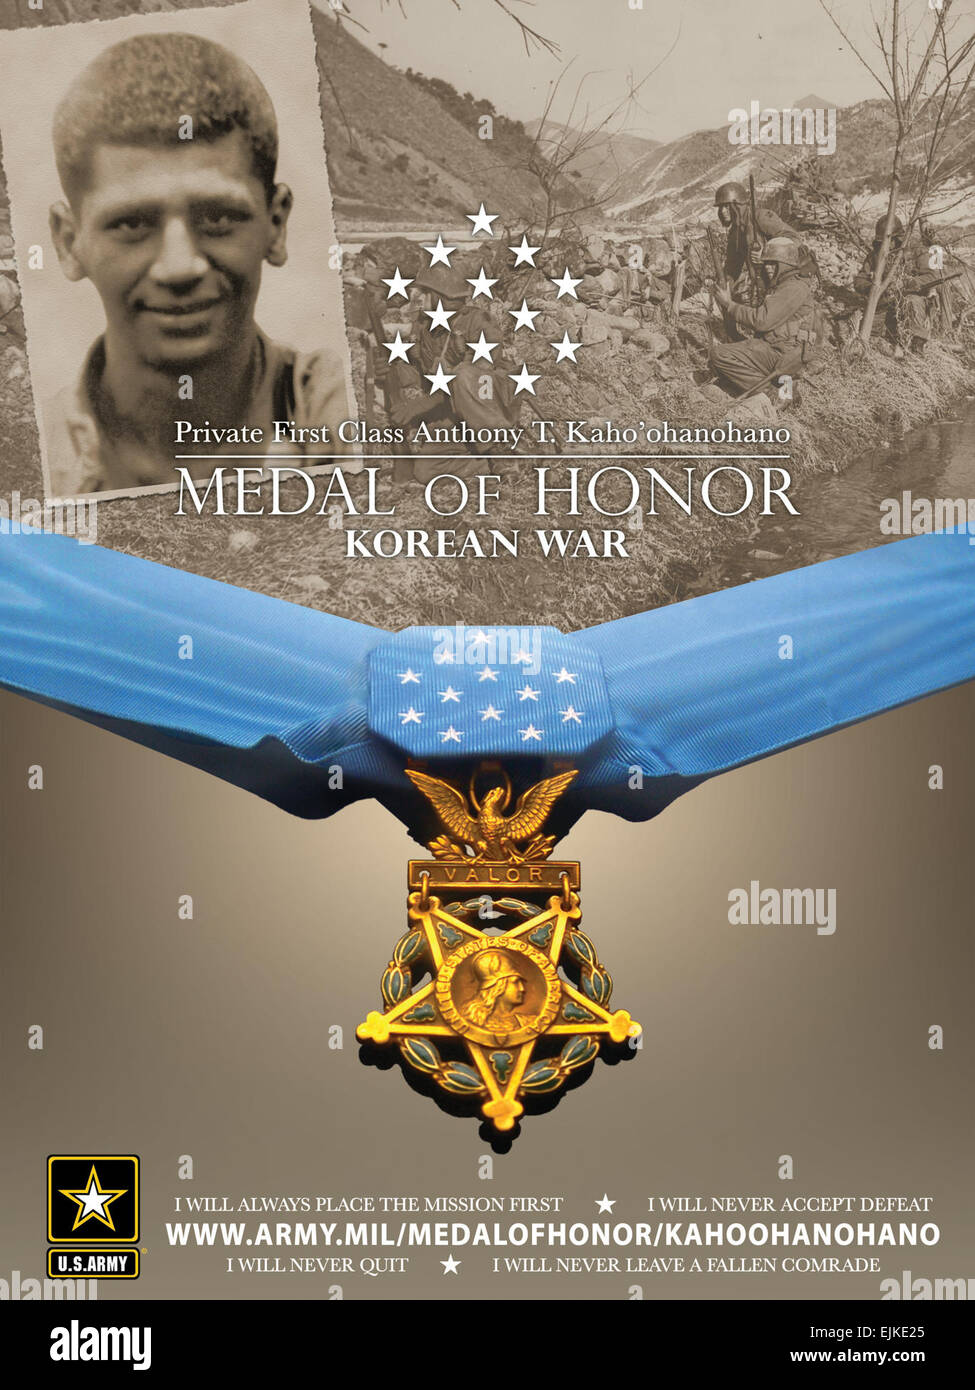 Deux soldats qui sont morts à cause de leurs actions et Intrepid Gallant au cours de la guerre de Corée sera reçu à titre posthume la Médaille honneur lors d'une cérémonie, aujourd'hui, à la Maison Blanche. Les familles de la FPC. Anthony T. Kaho'ohanohano et la FPC. Henry Masson a reçu les médailles du Président Barack Obama au nom des deux soldats. /-News/2011/04/29/55695-2-korean-guerre-héros-t... /-News/2011/04/29/55695-2-korean-guerre-héros-à-être-décerné à titre posthume la Médaille de l'honneur-aujourd'/index.html ?ref =home-Titre-titre1 Banque D'Images